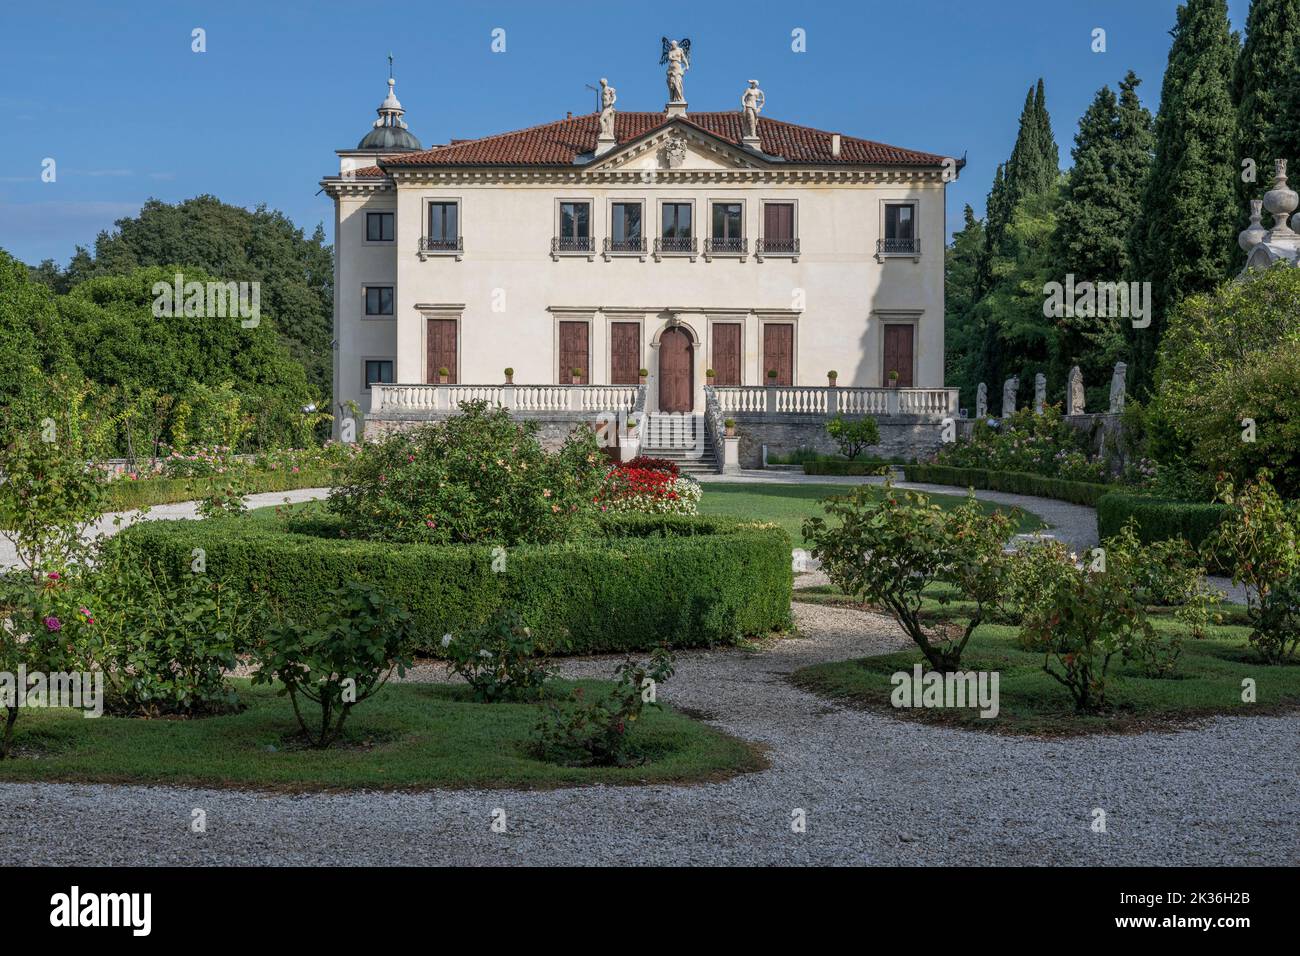 Villa Valmarana ai nani, Vicenza, Veneto, Italy Stock Photo